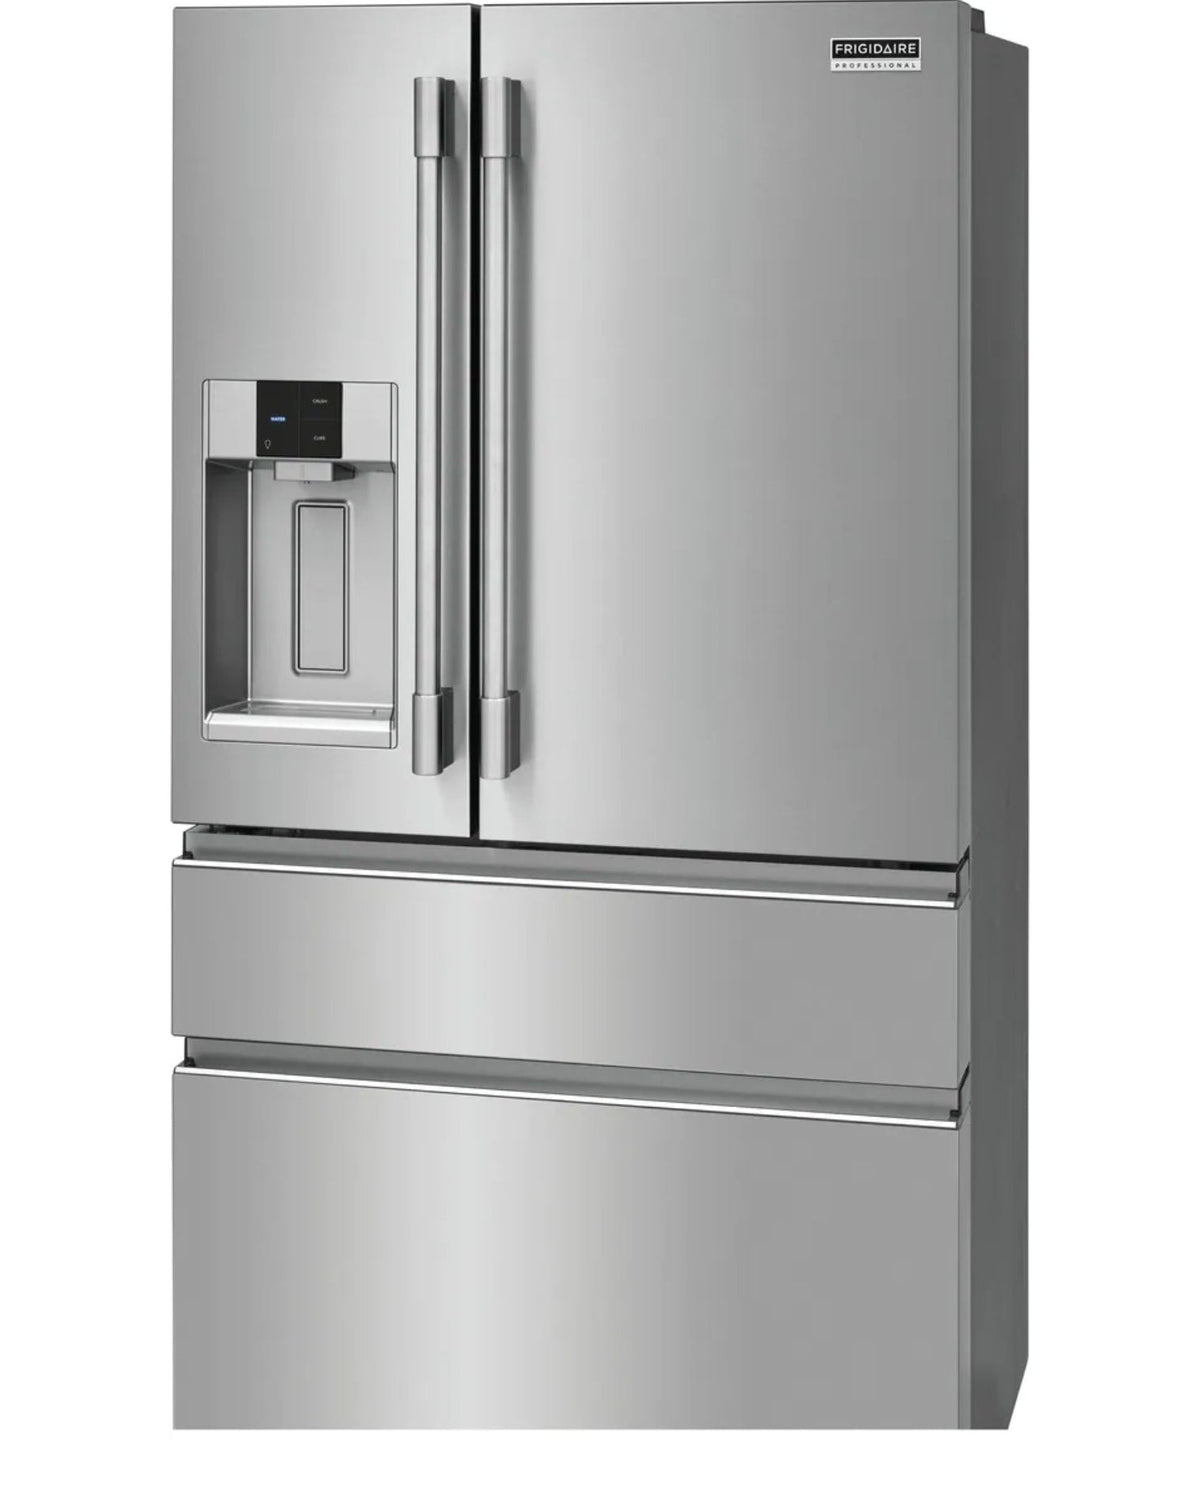 FRIGIDAIRE PRMC2285AF Professional 21.4 Cu. Ft. Counter-Depth 4-Door French Door Refrigerator